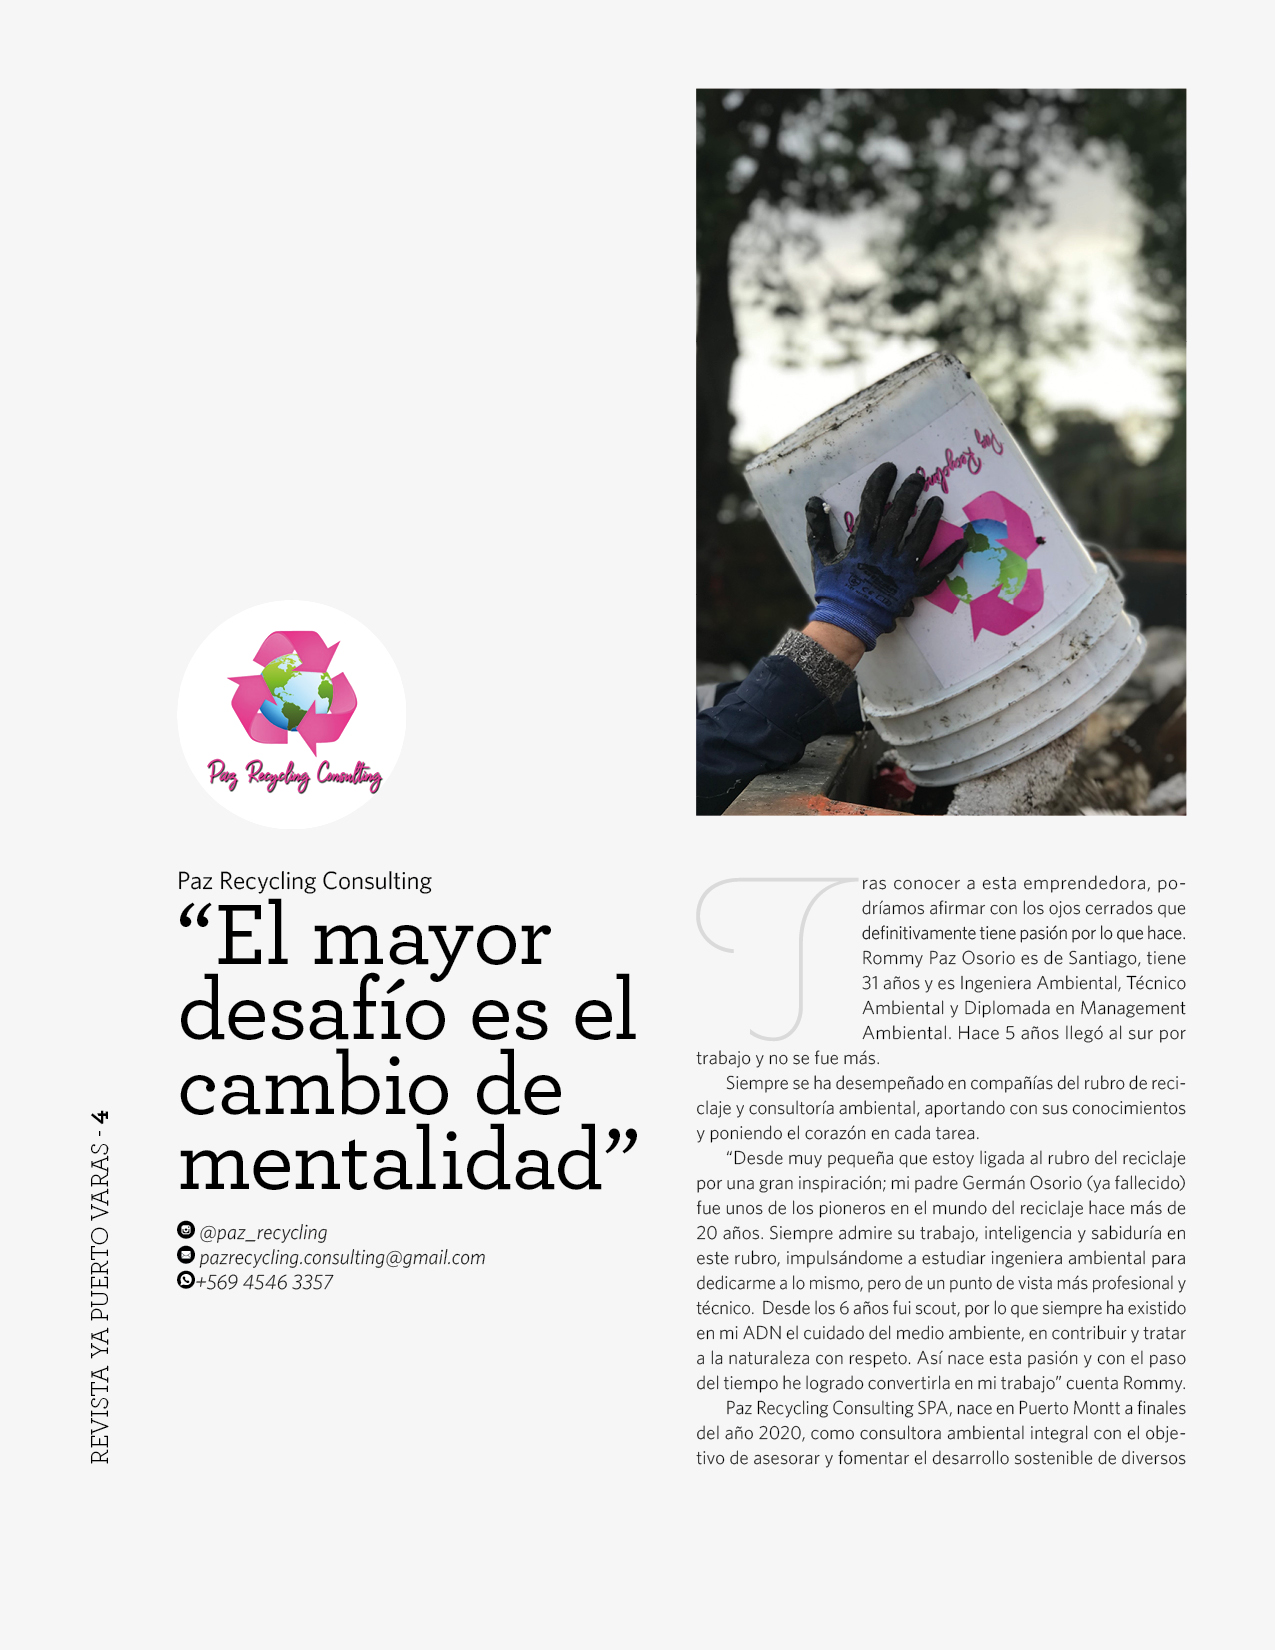 RevistaYAPuertoVaras: 'El mayor desafío es el cambio de mentalidad'